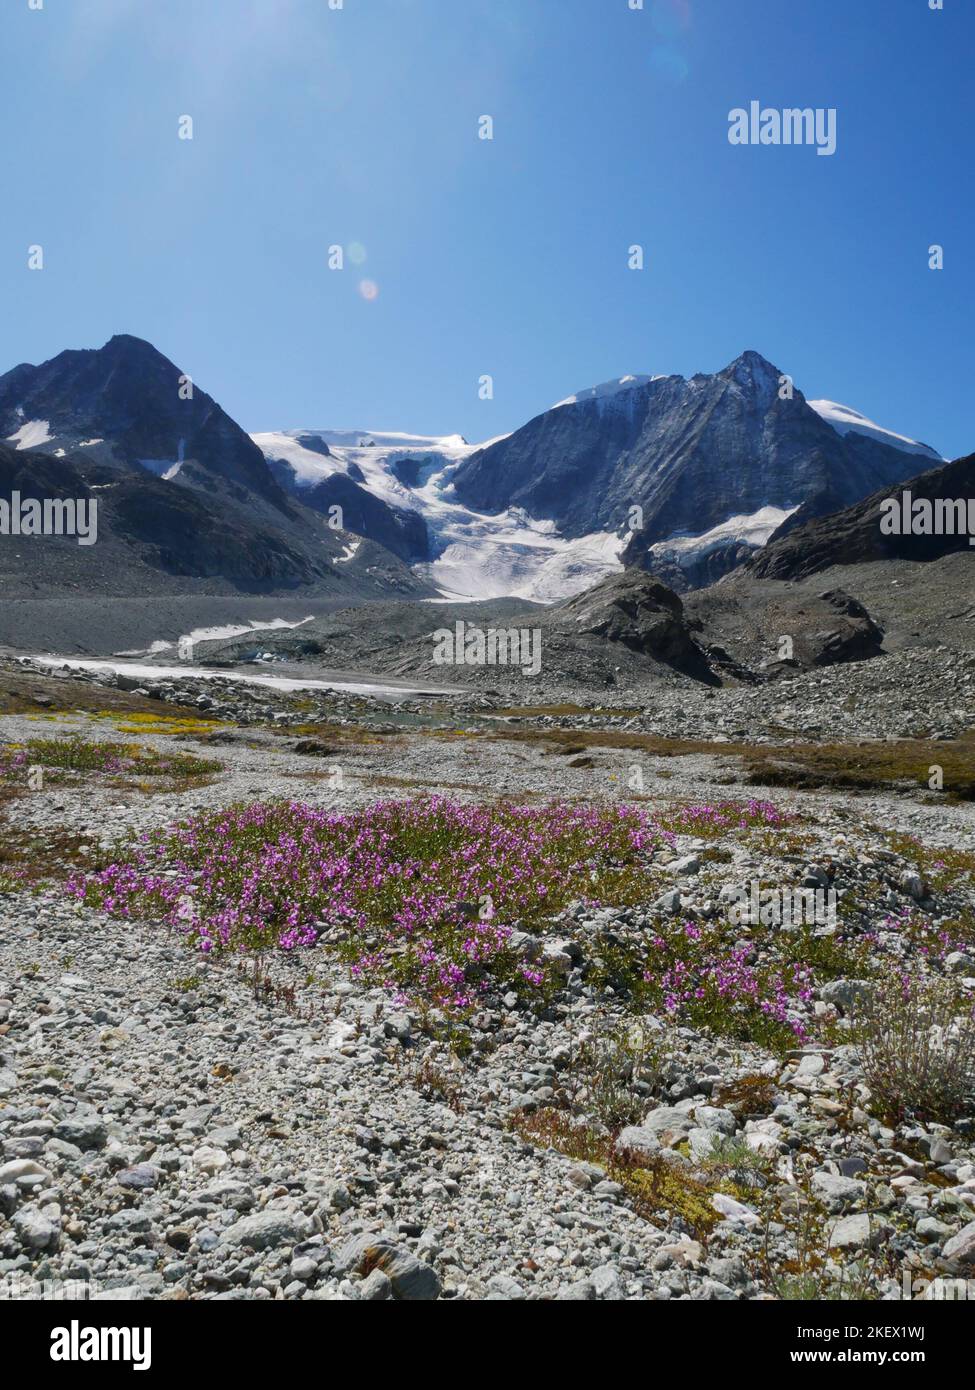 Eine Auswahl von alpinen Blumen, die in den europäischen Alpen gefunden werden. Alle Bilder, die ich selbst gemacht habe, während ich die Natur der Alpen erkundeten und entdeckten. Stockfoto